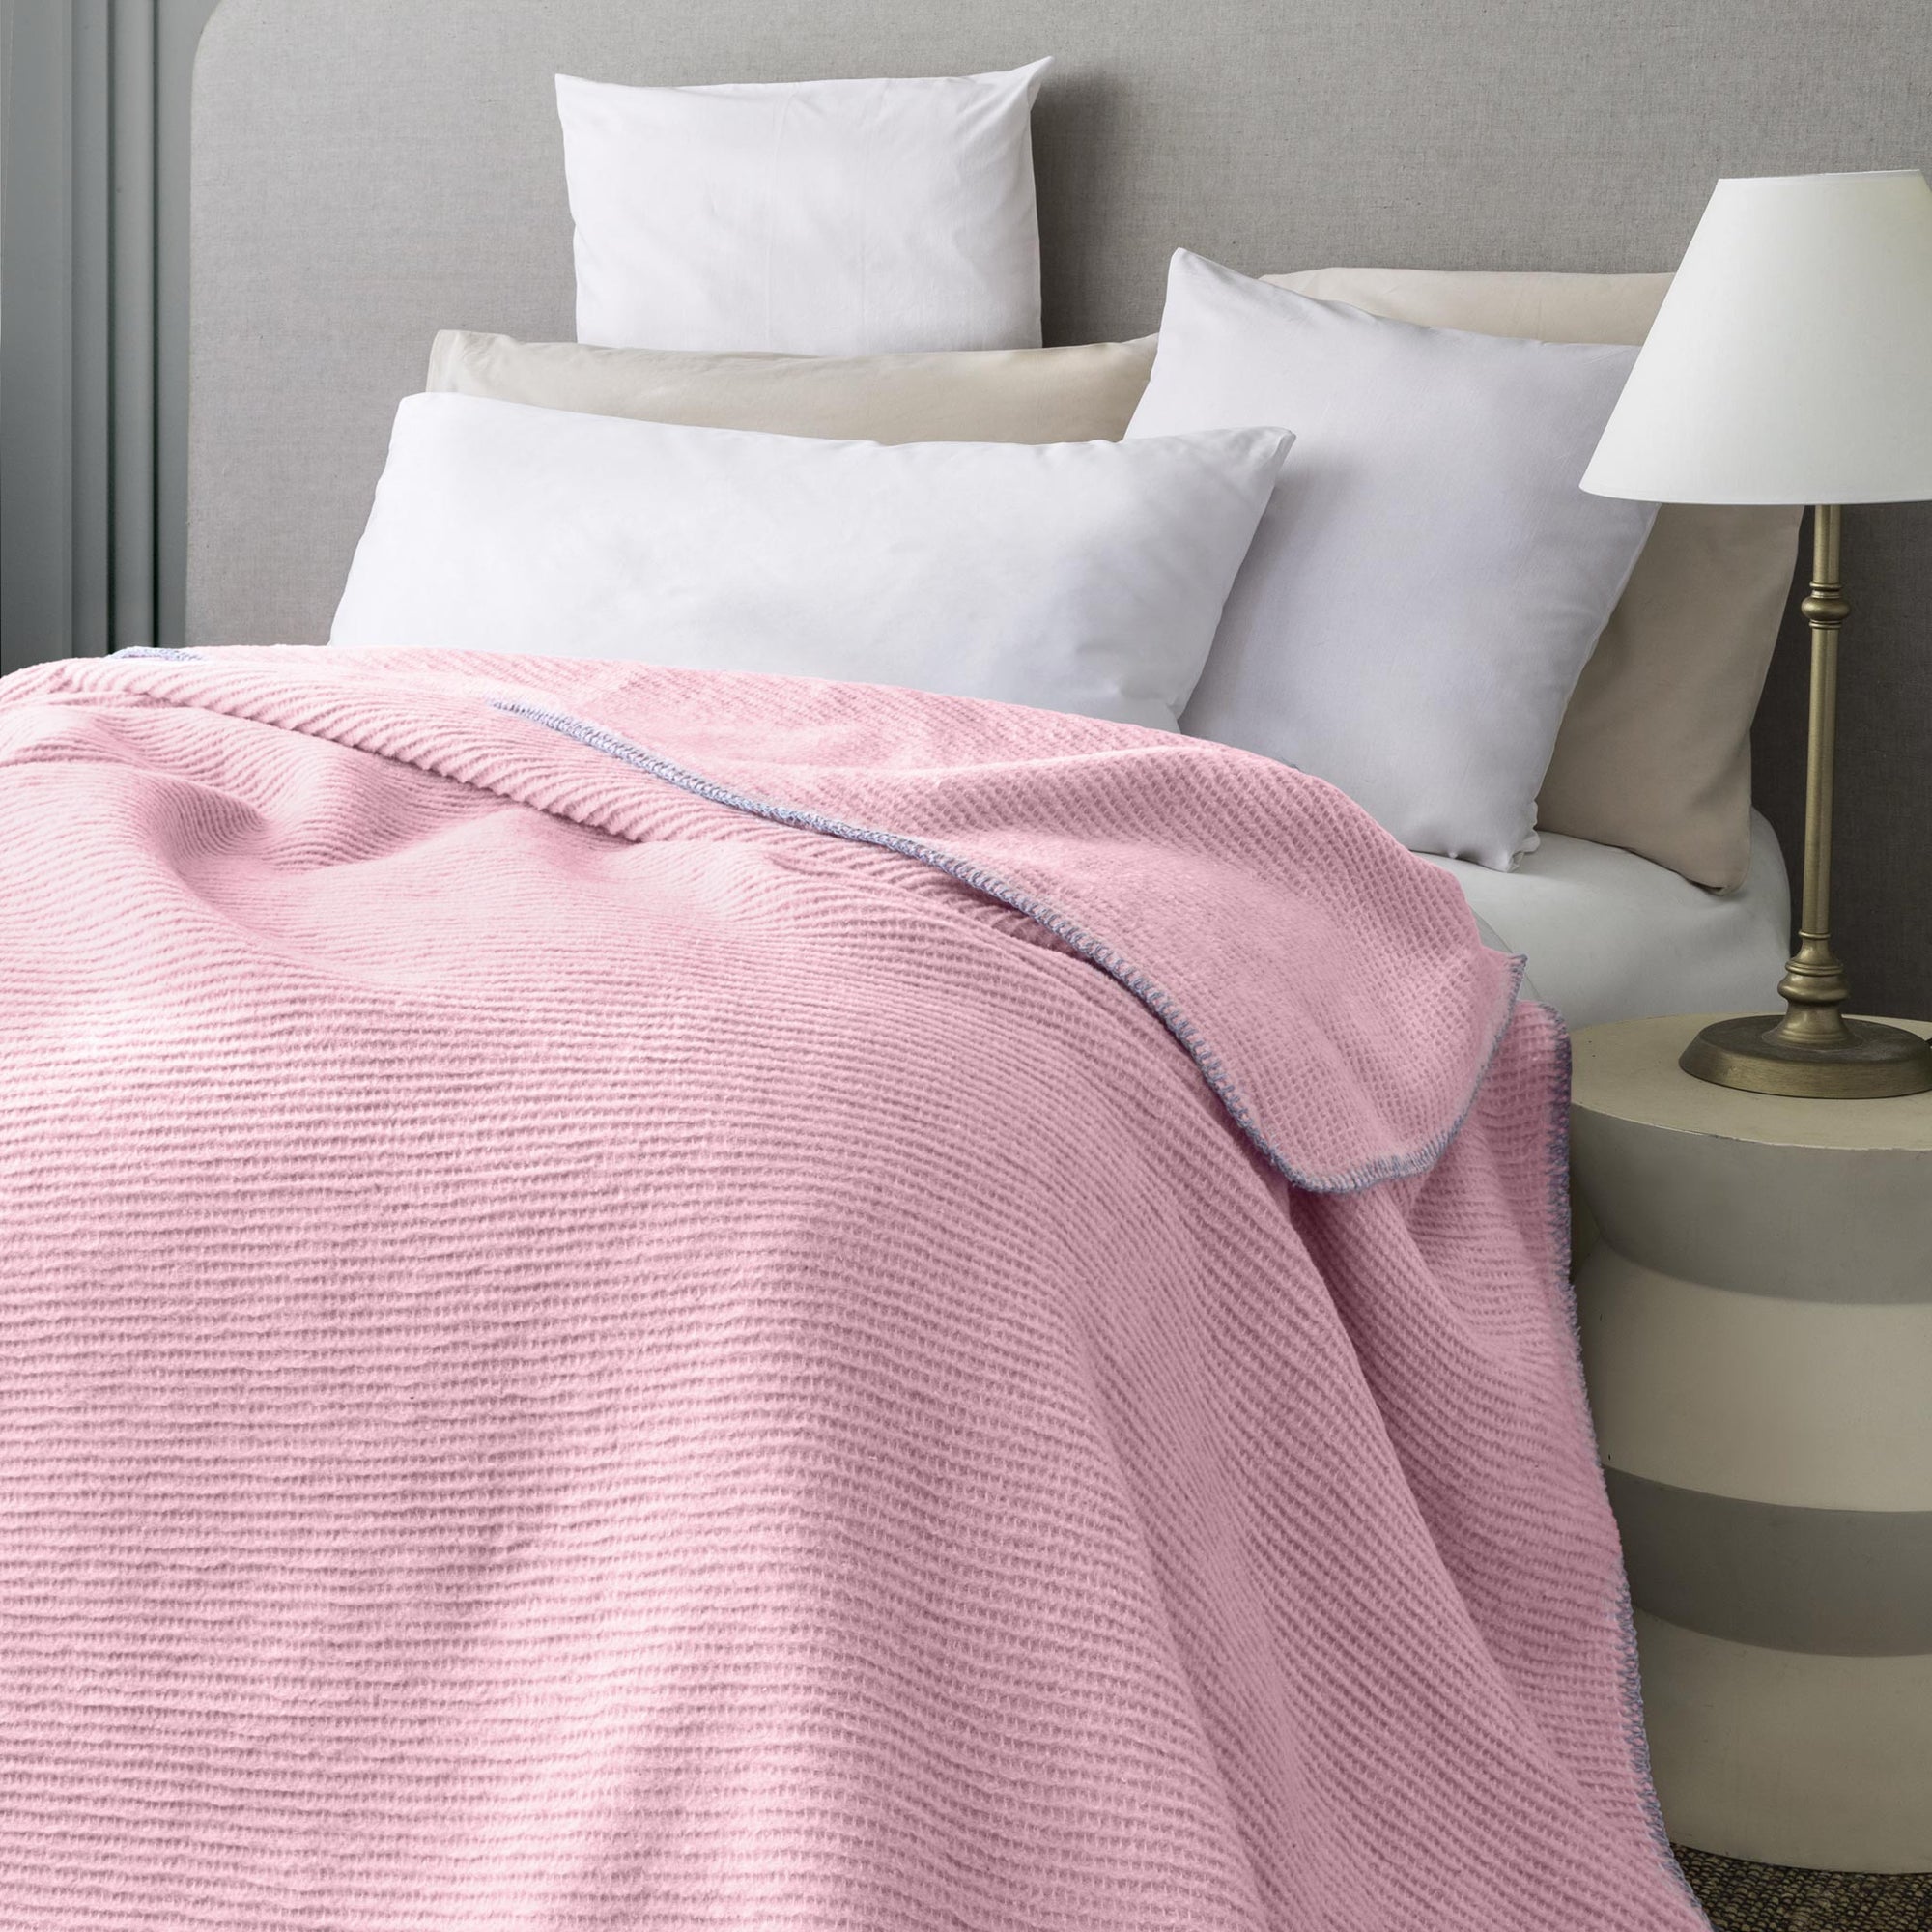 Recycelte rosafarbene, superweiche und warme Sofaüberwurf-Decke, Tagesdecke